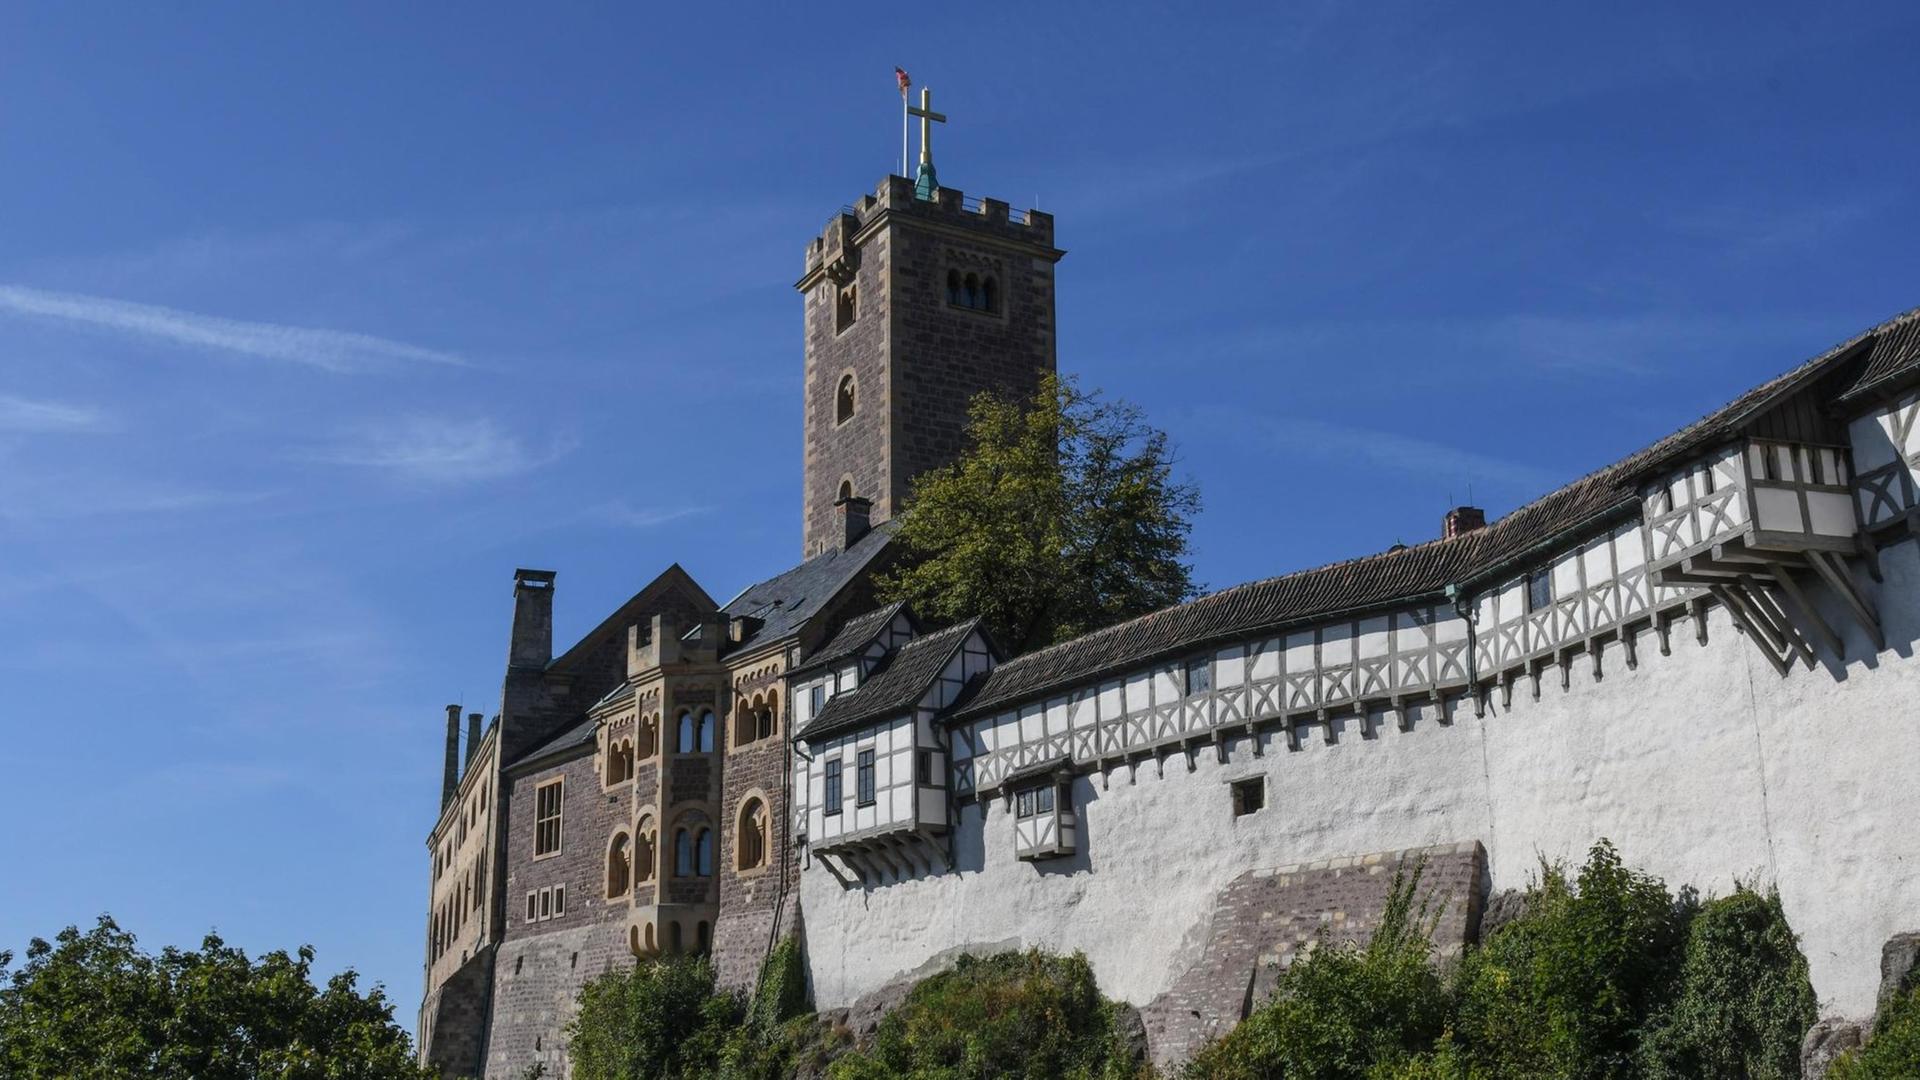  Die Wartburg über Eisenach bei strahlend blauem Himmel.Vom Mittelalter bis heute ist die Burg ein Symbolort deutscher Geschichte und inzwischen auch Unesco-Weltkulturerbe.